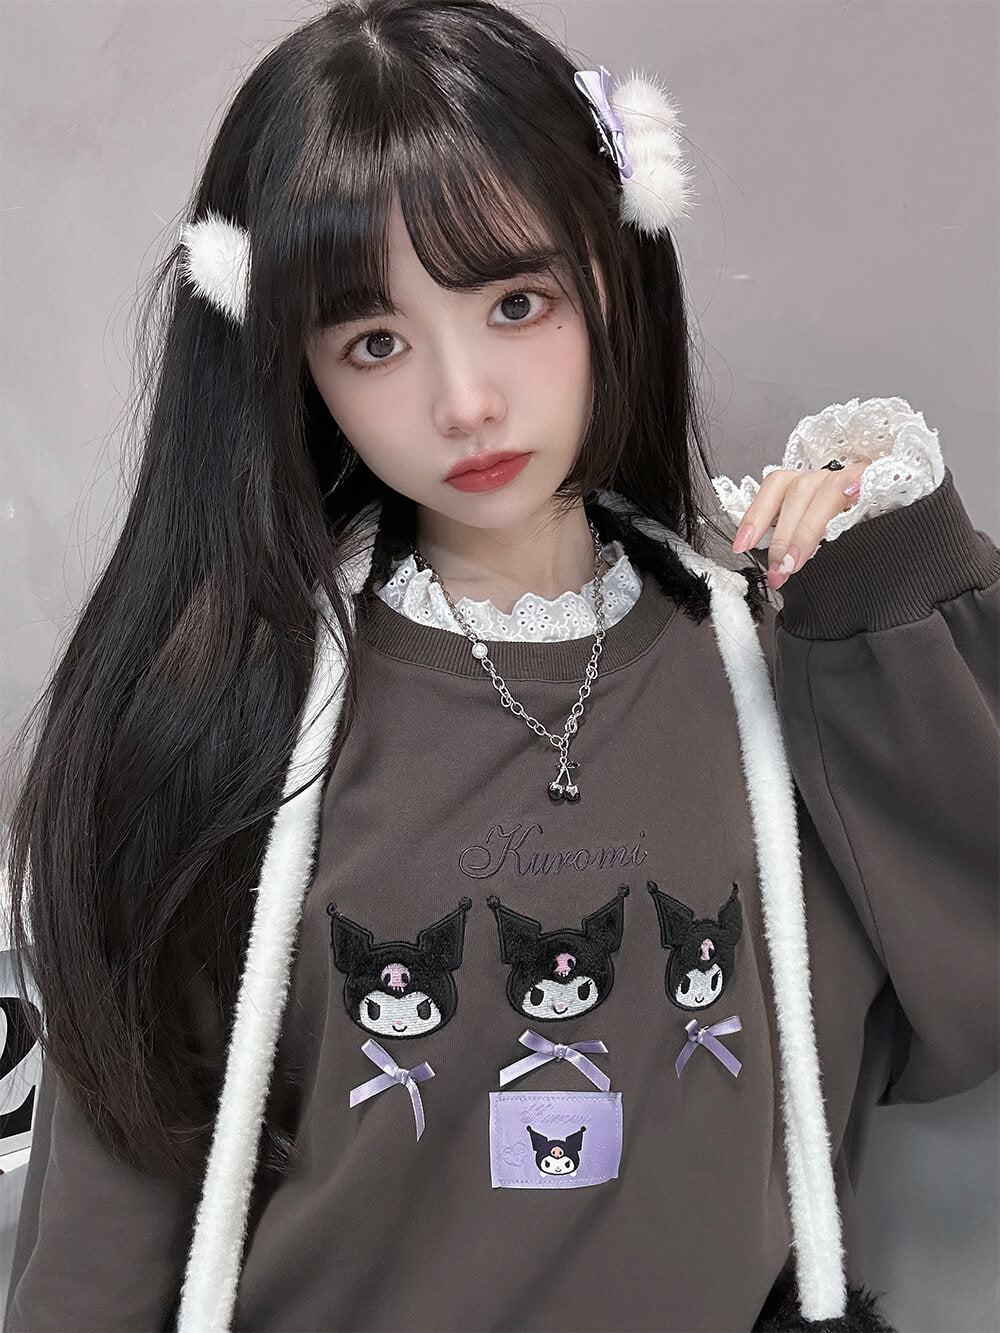 neckline-lace-fuzzy-kuromi-embroidery-grey-sweatshirt